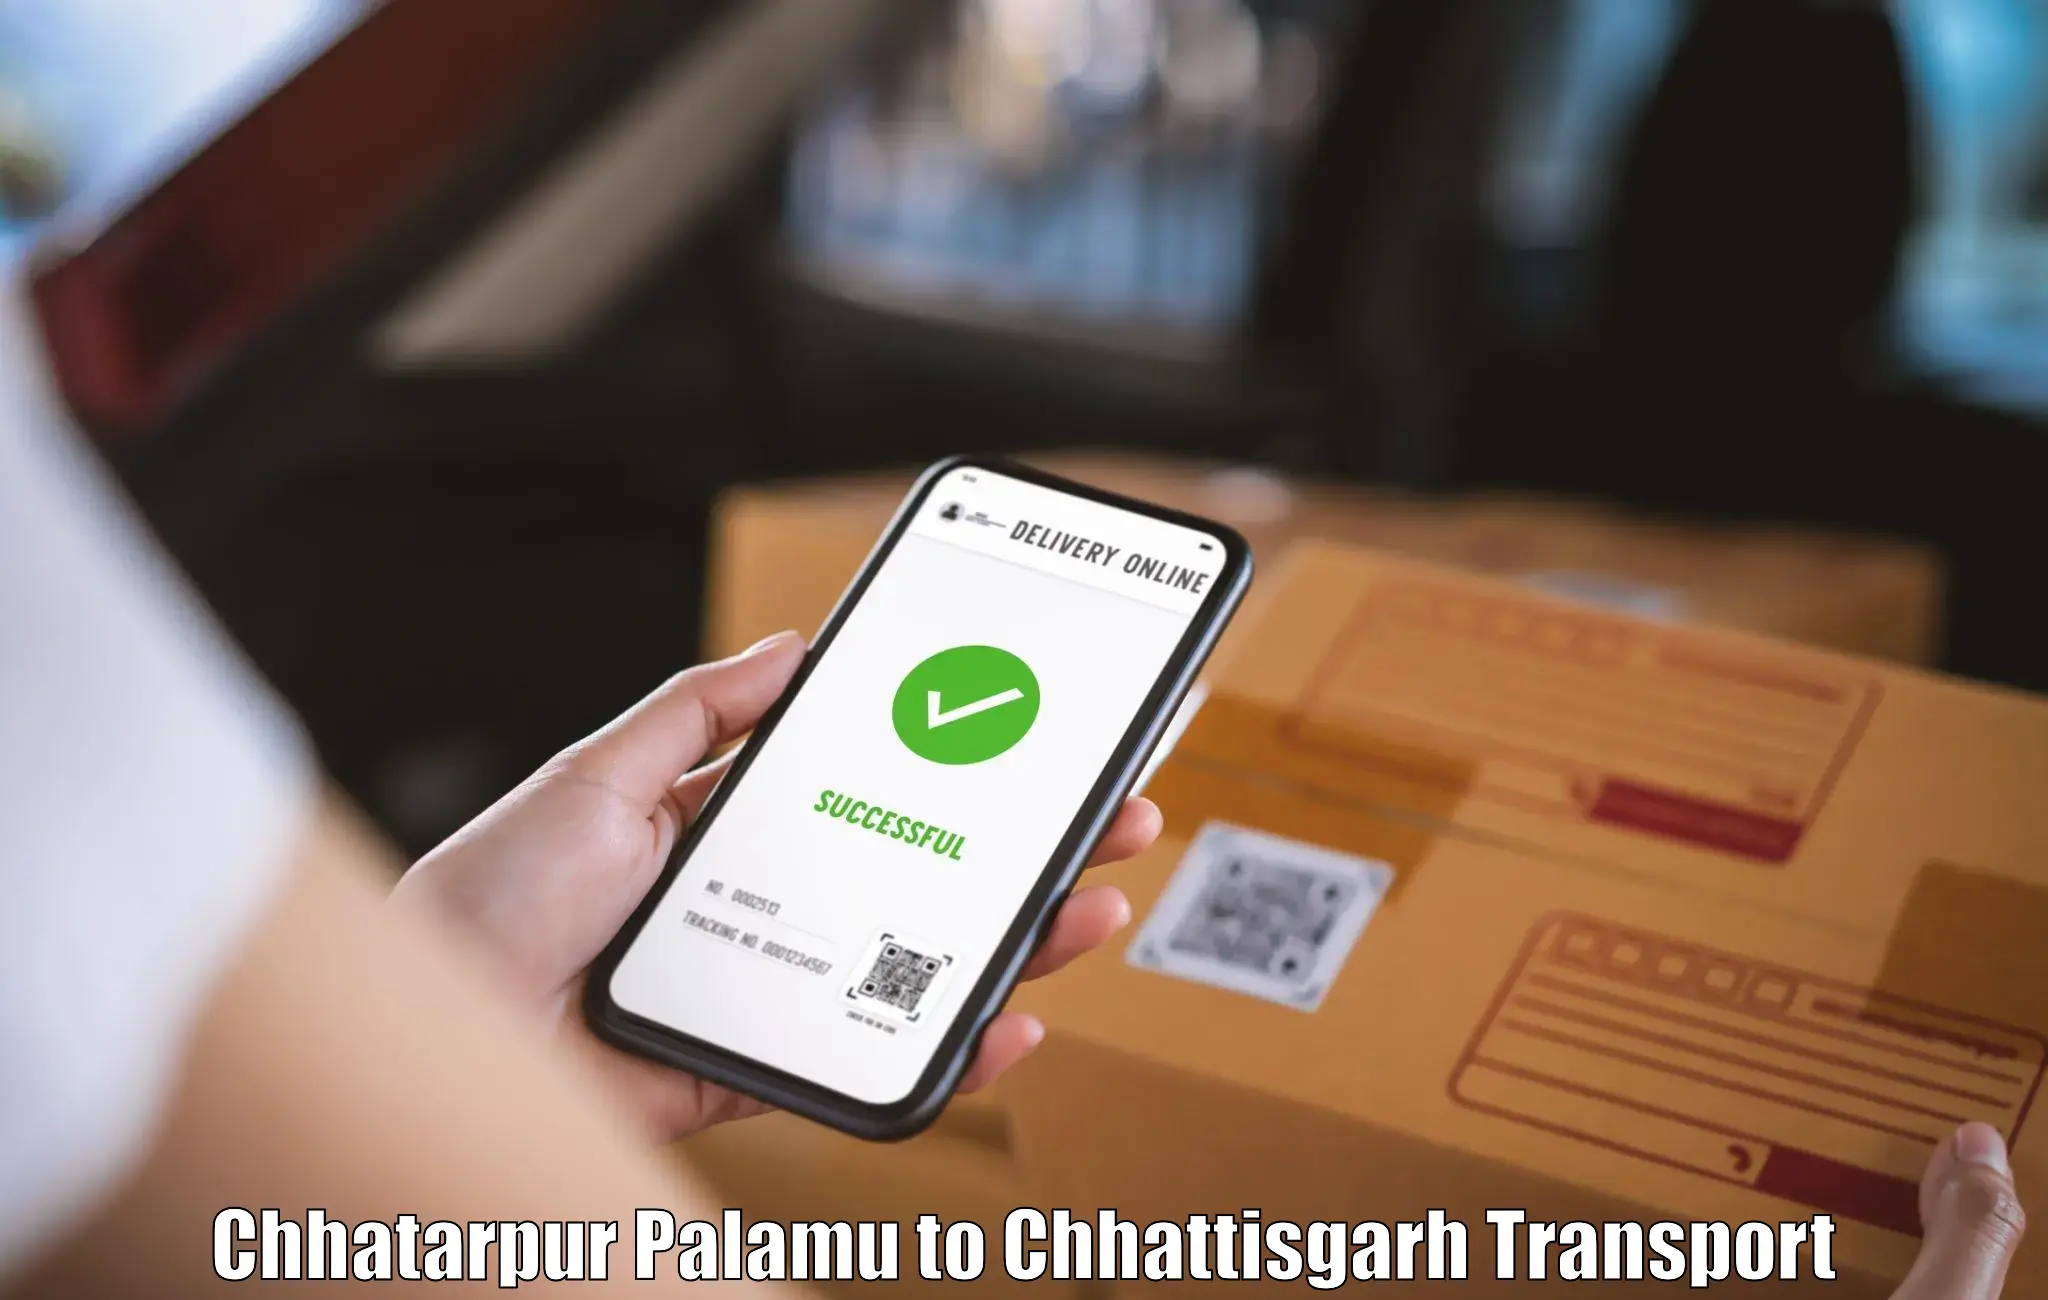 Container transport service Chhatarpur Palamu to Korba